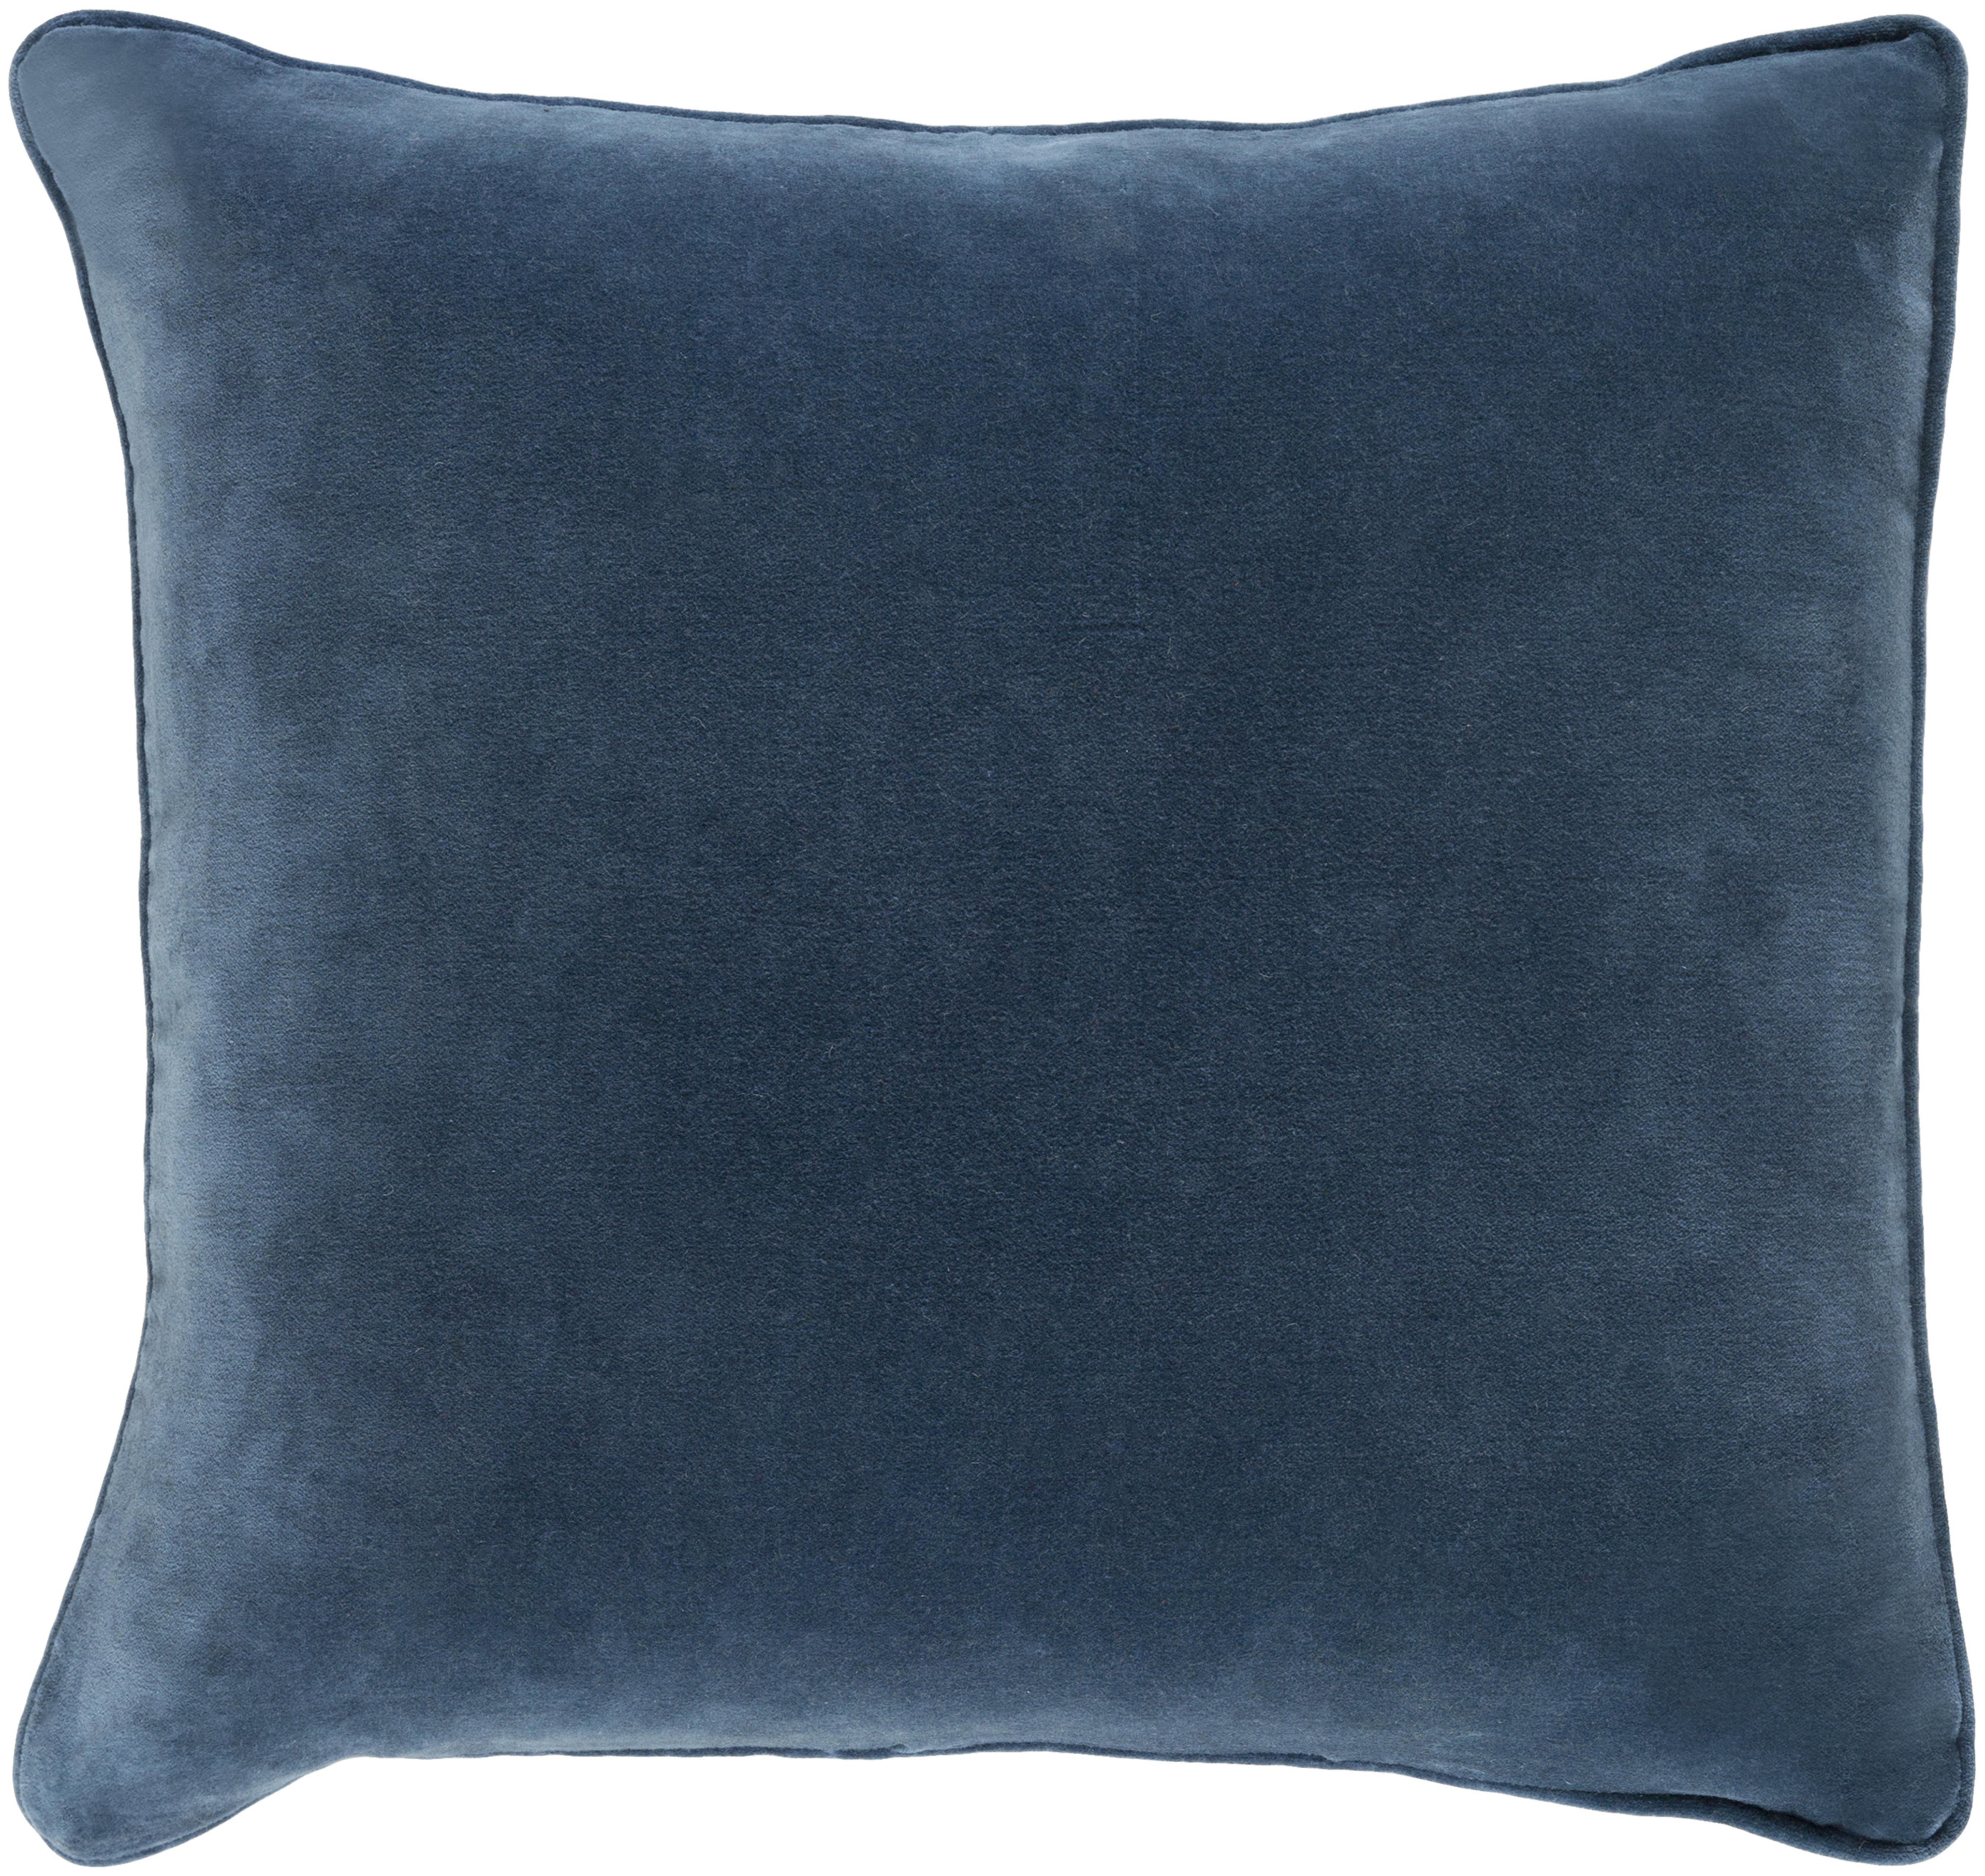 Safflower Pillow, 22" x 22", Teal - Neva Home